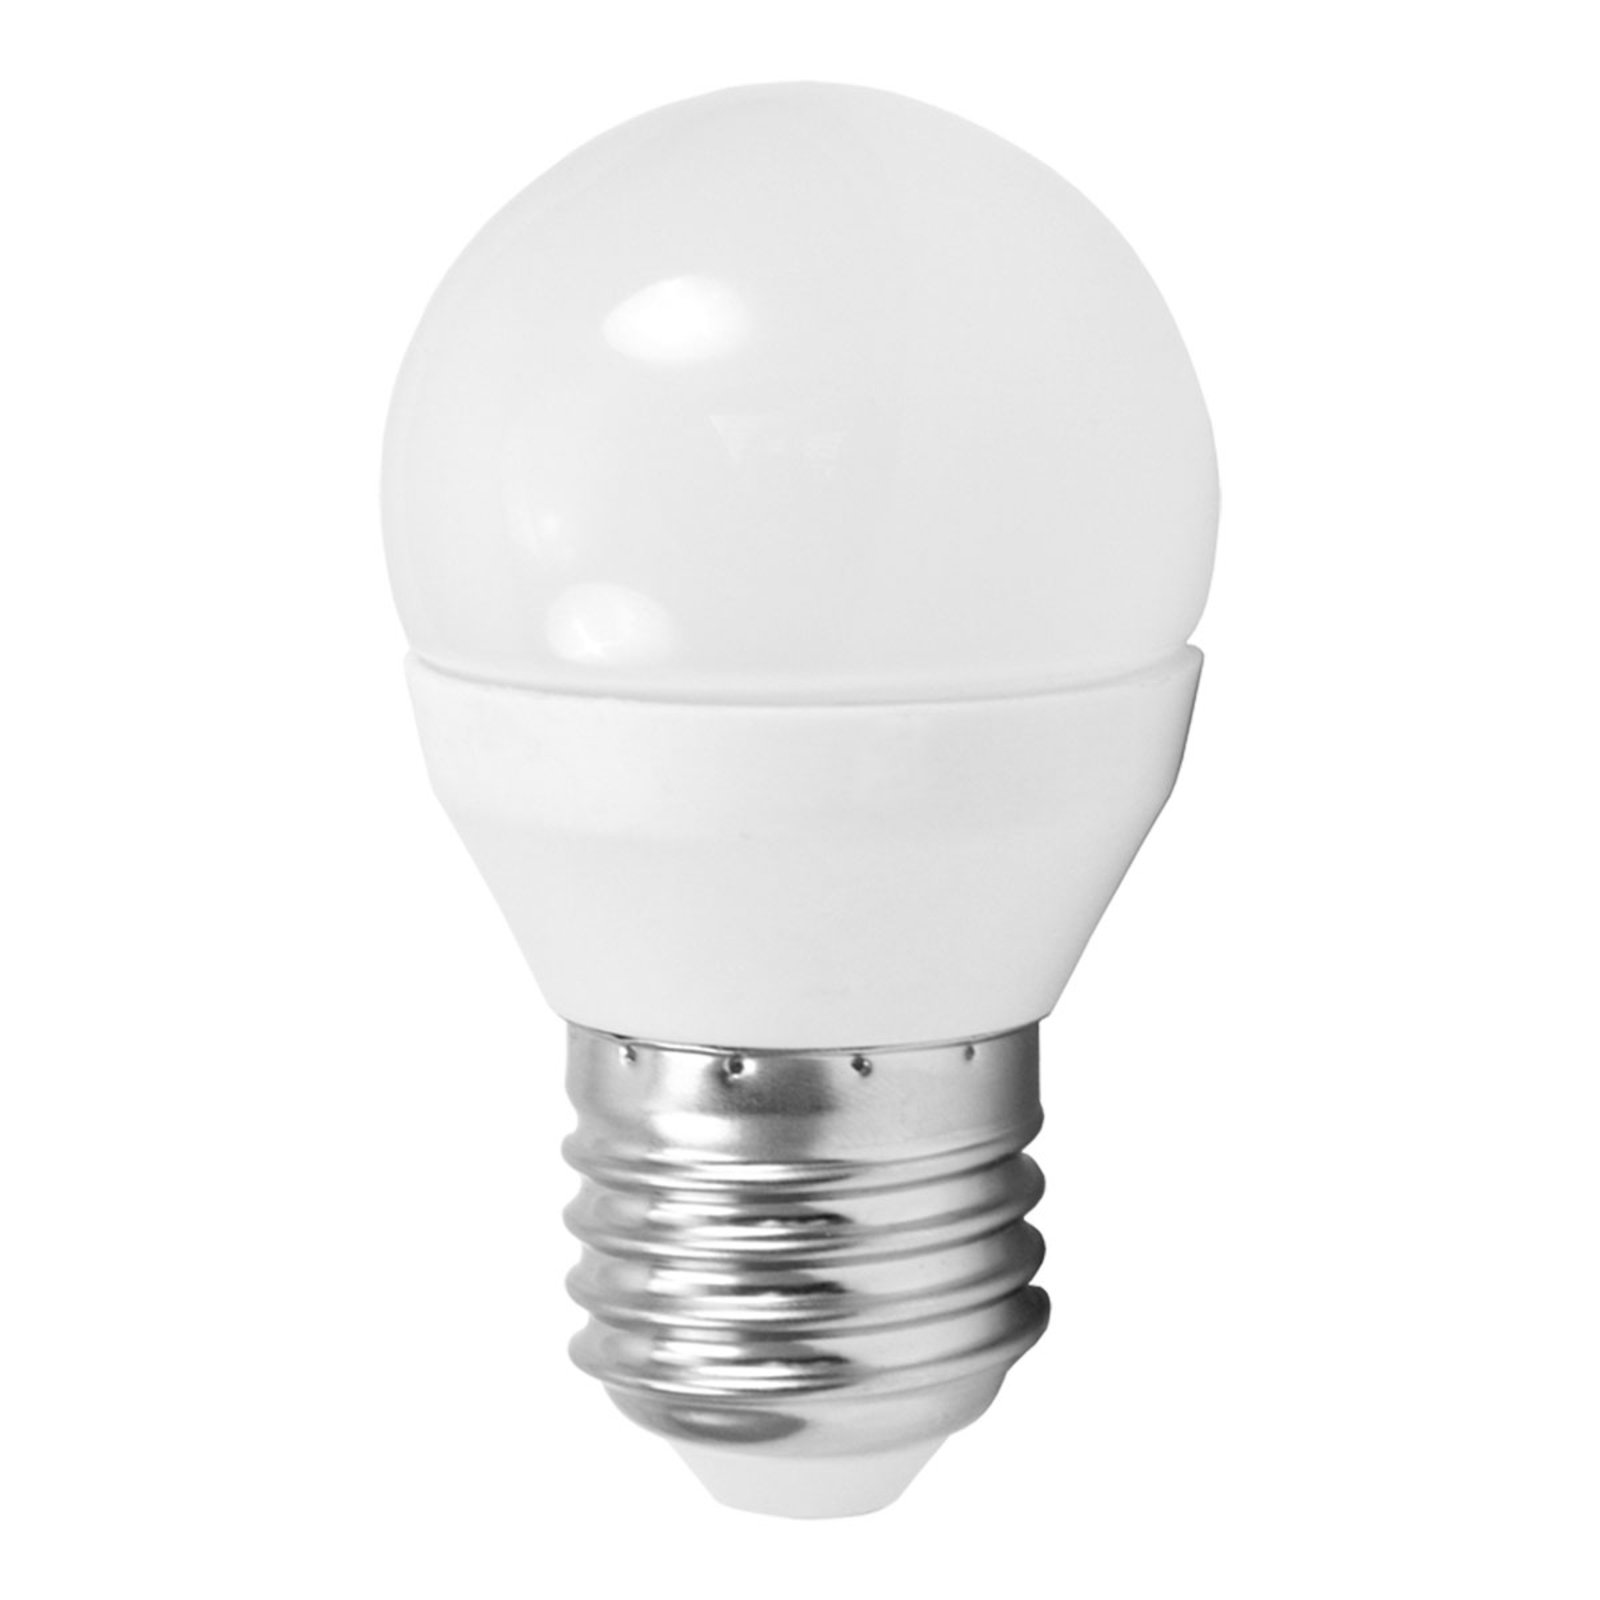 LED bulb E27 G45 5 W mini-globe, universal white